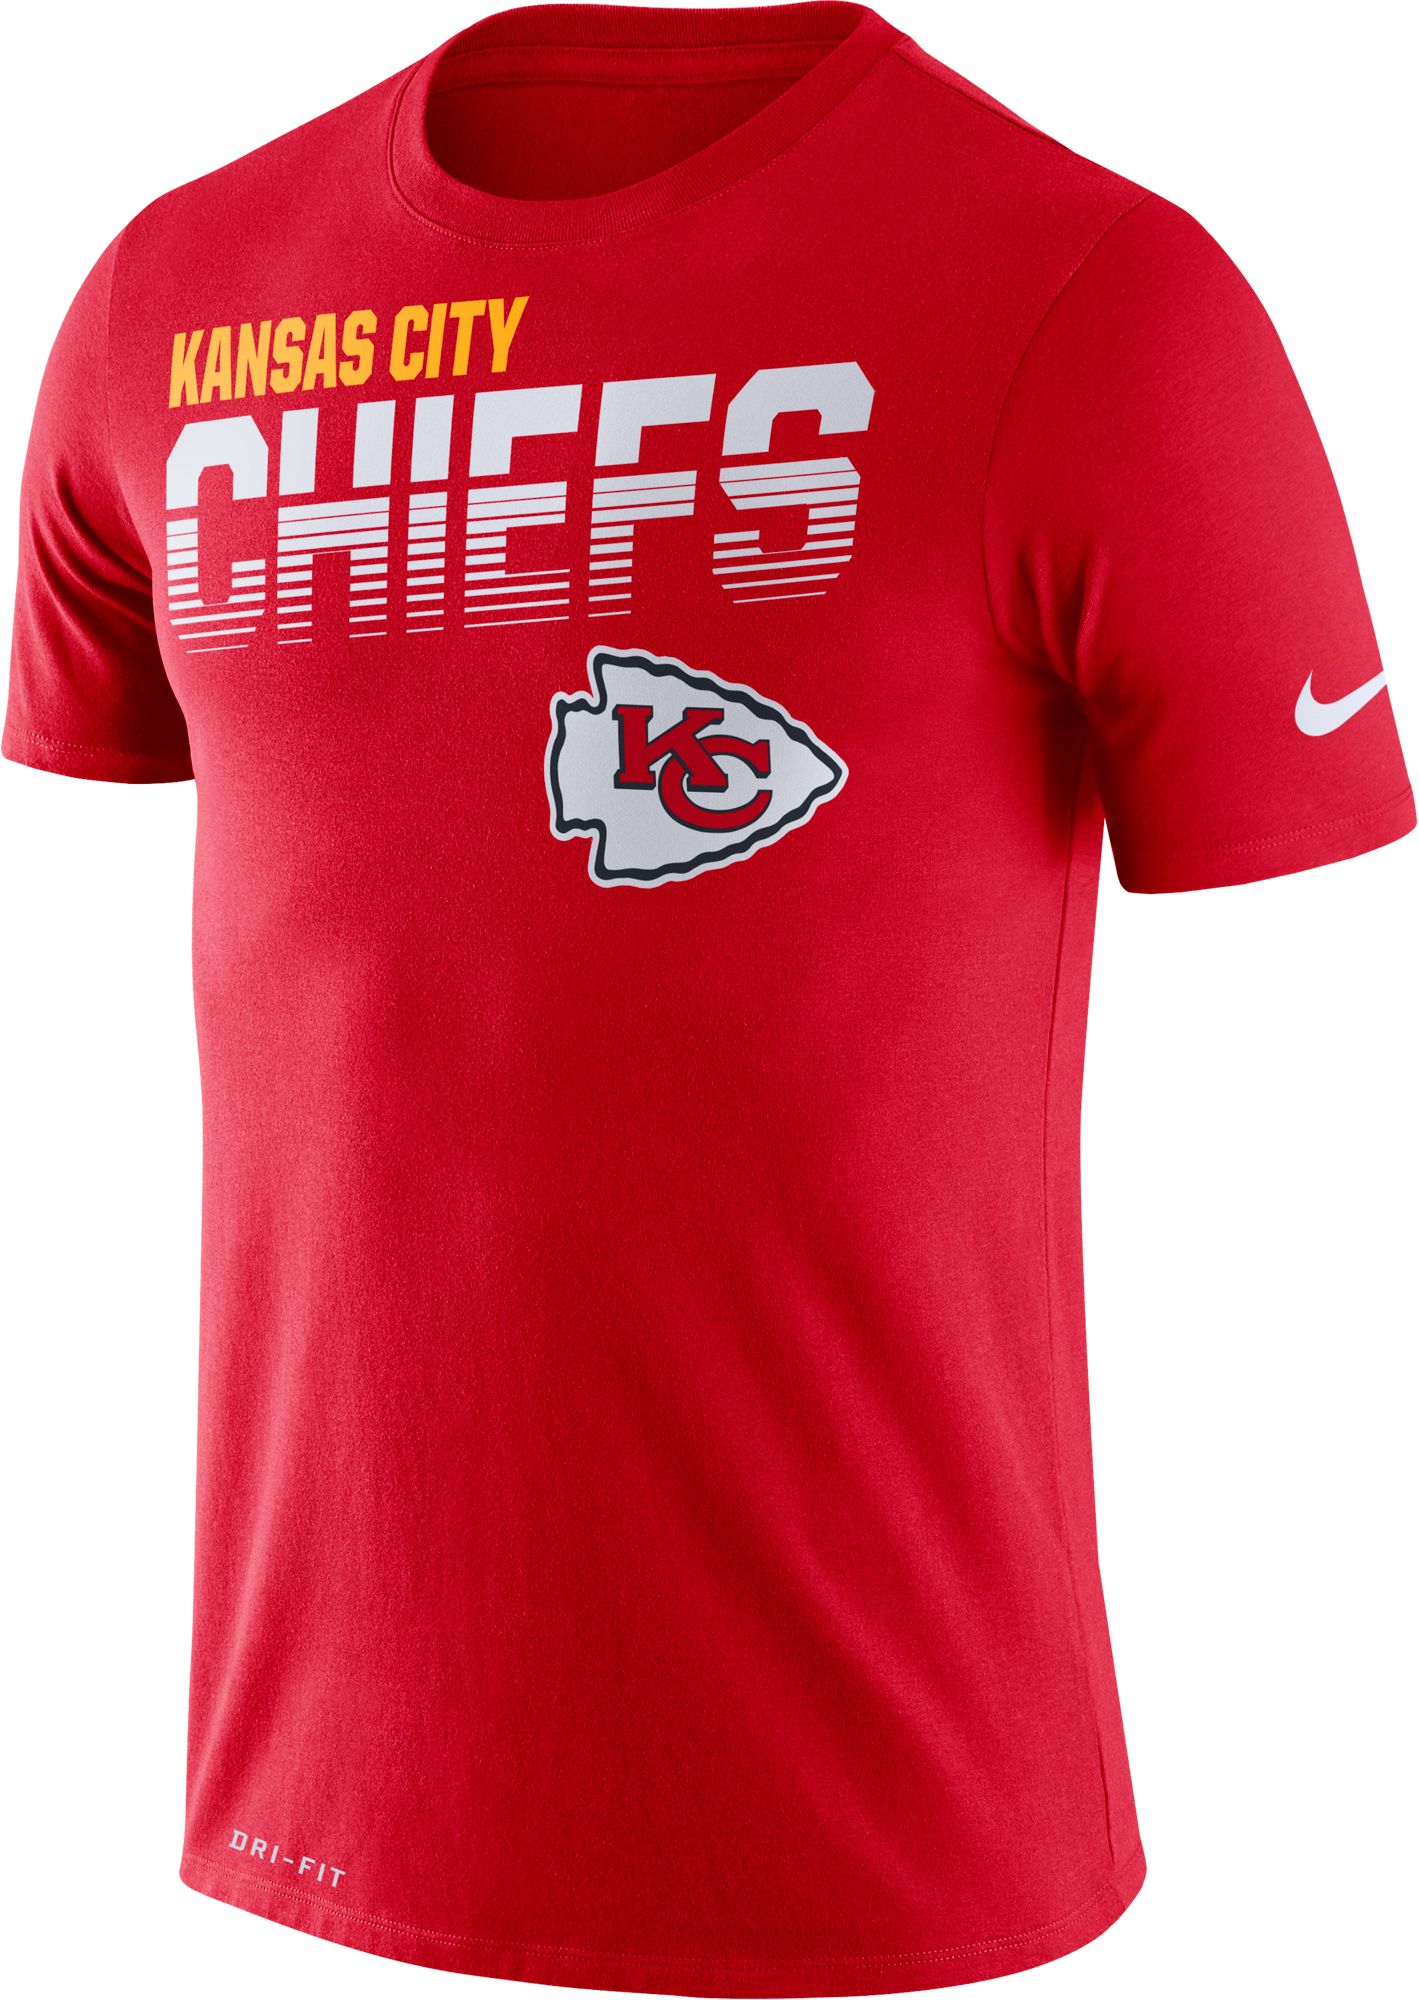 chiefs nike shirt